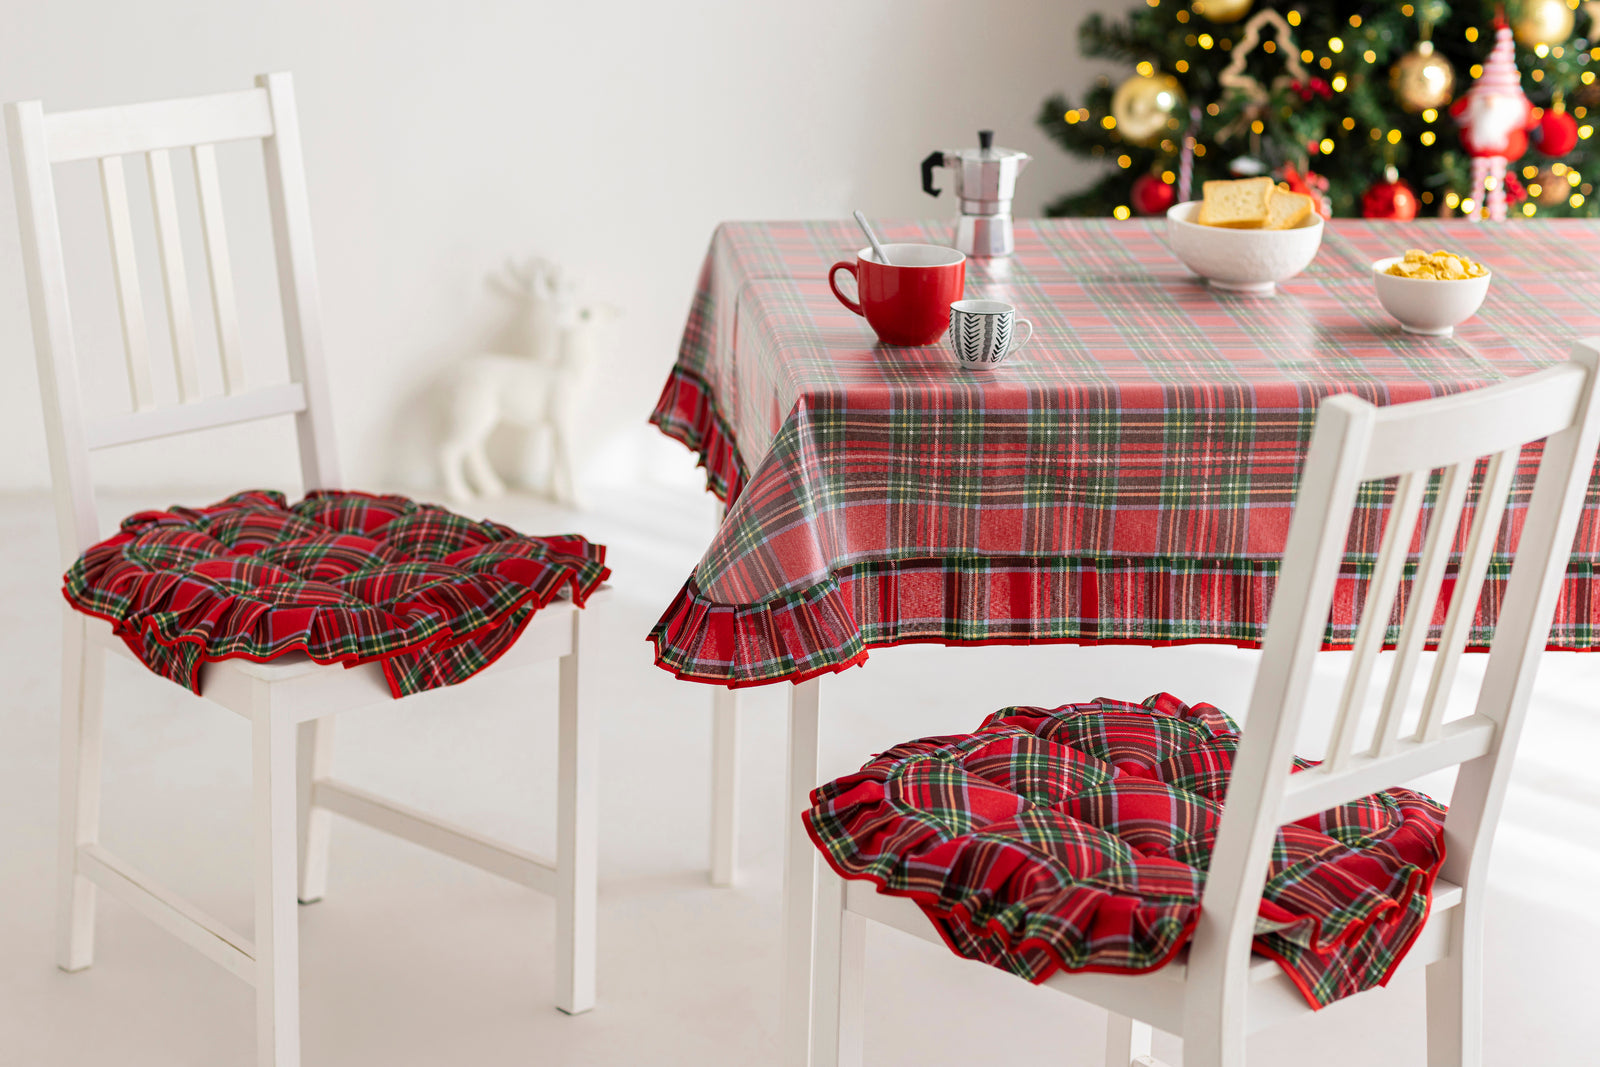 Tovaglia antimacchia natalizia per tavola quadrata 140x140 per 4 posti  decorazio